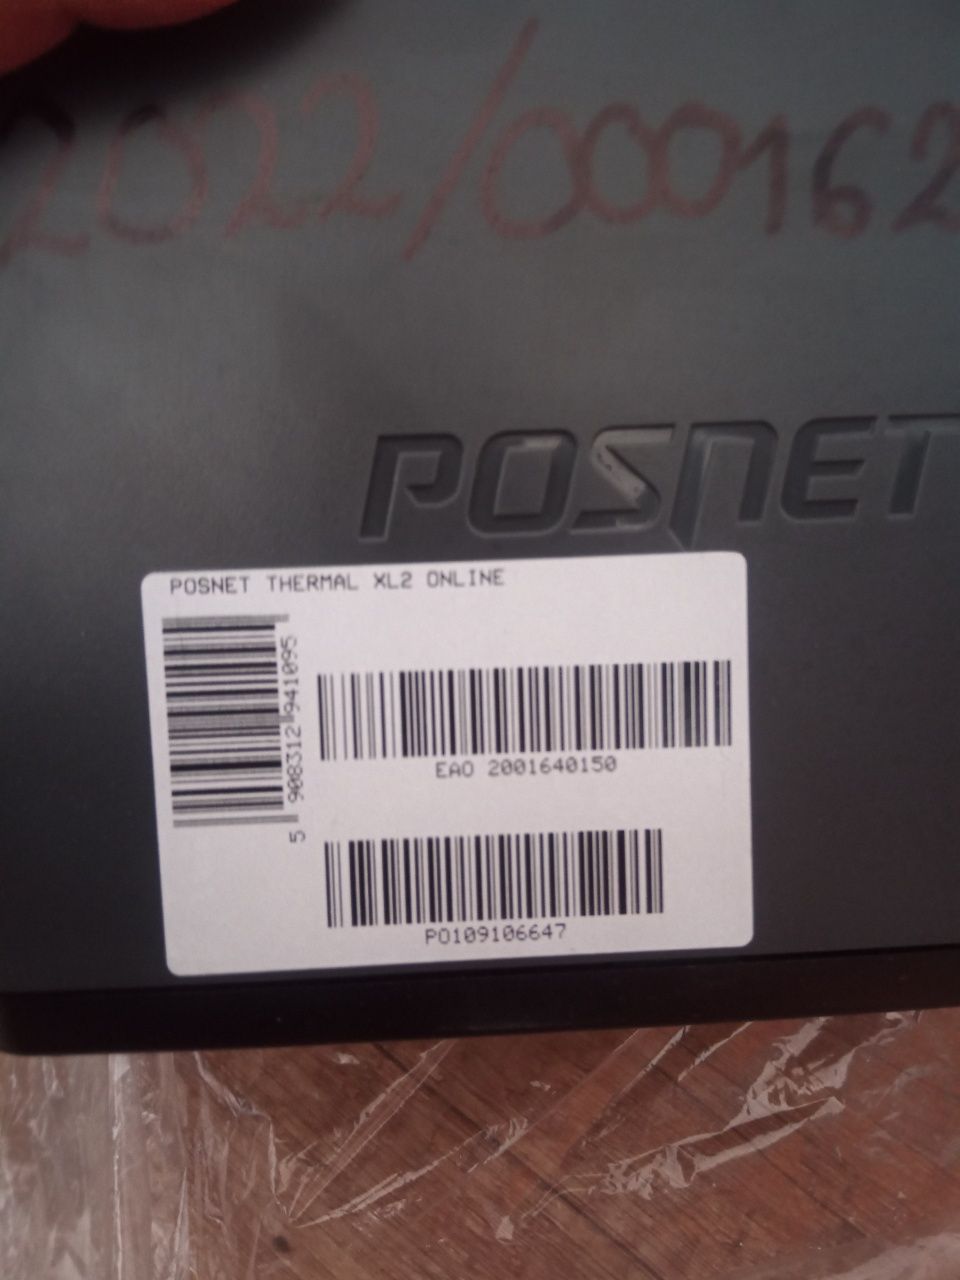 Posnet Thermal XL2 Online